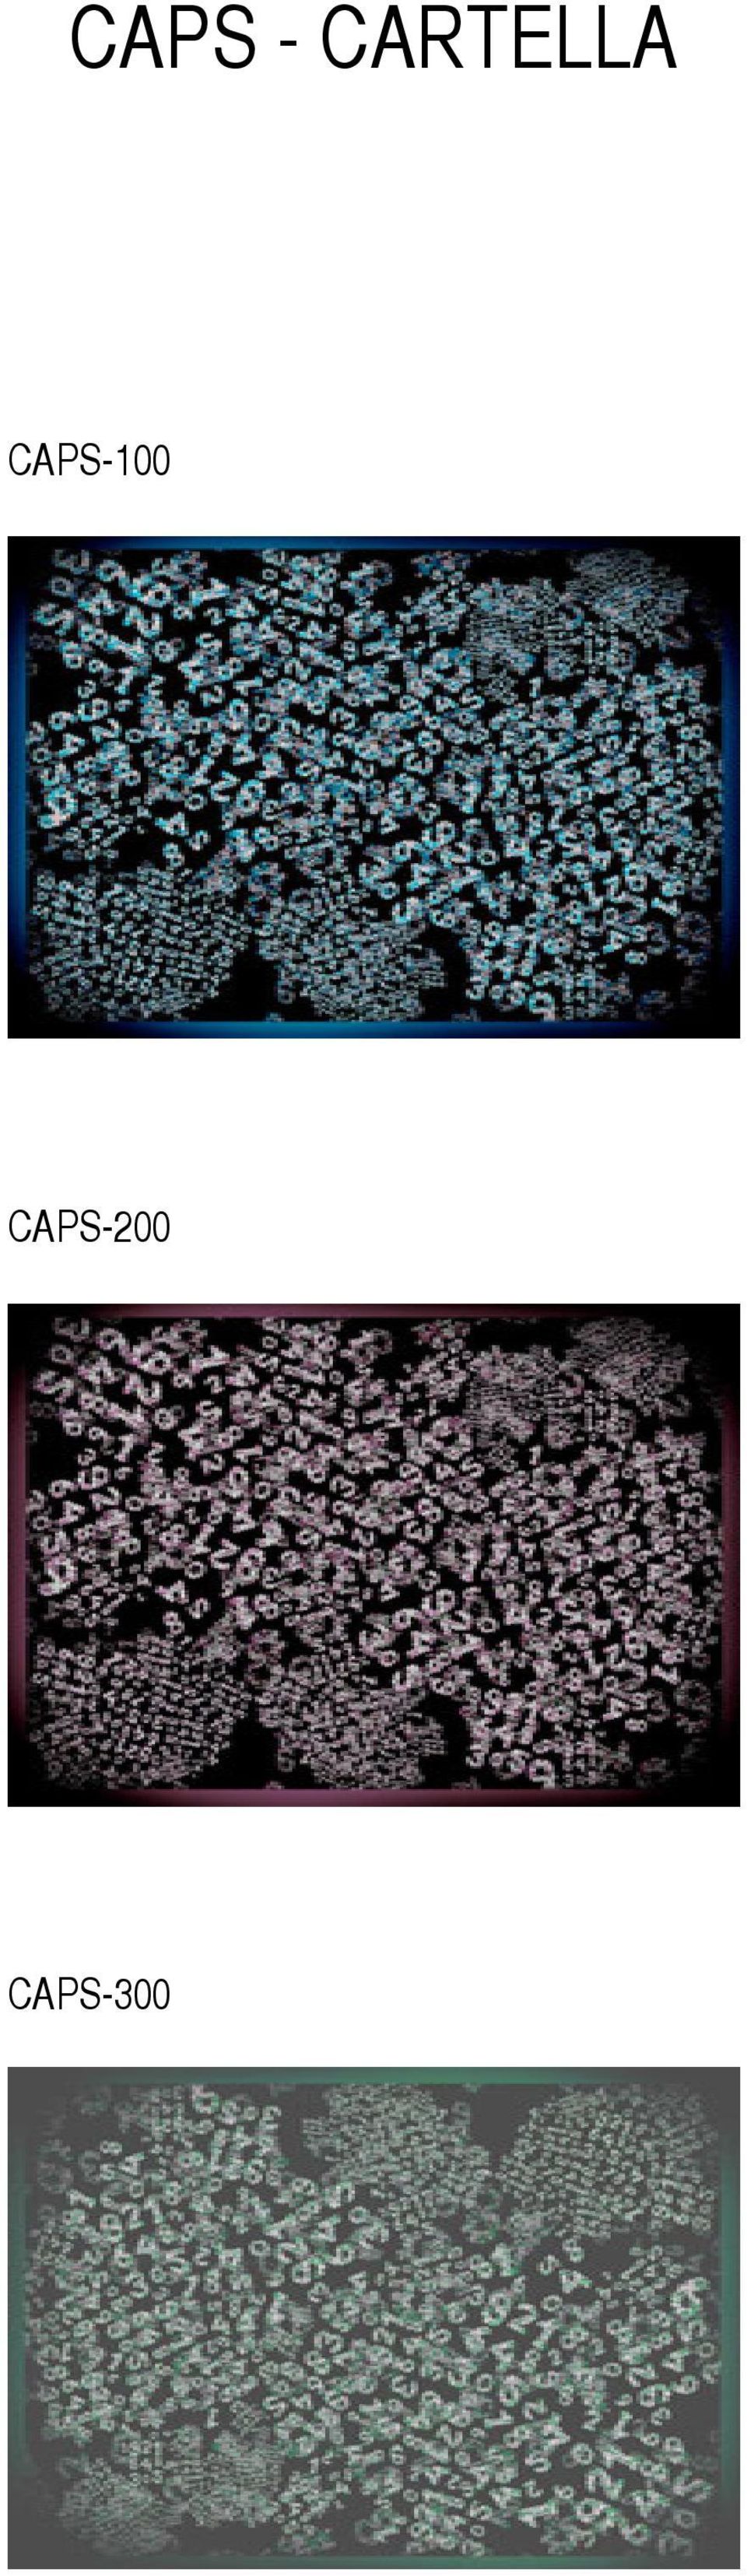 CAPS-100